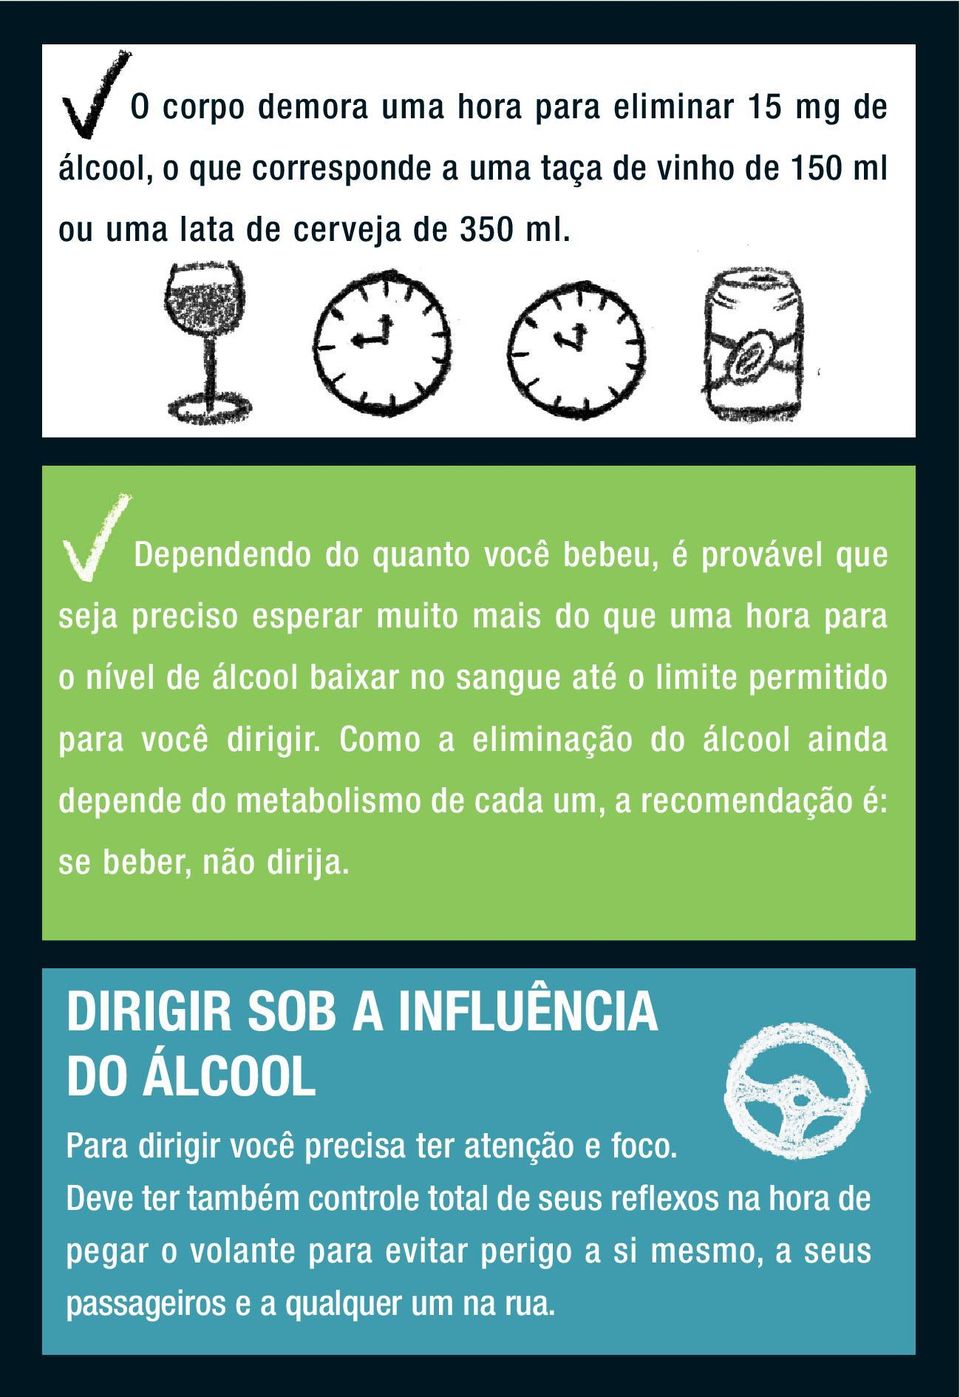 você dirigir. Como a eliminação do álcool ainda depende do metabolismo de cada um, a recomendação é: se beber, não dirija.